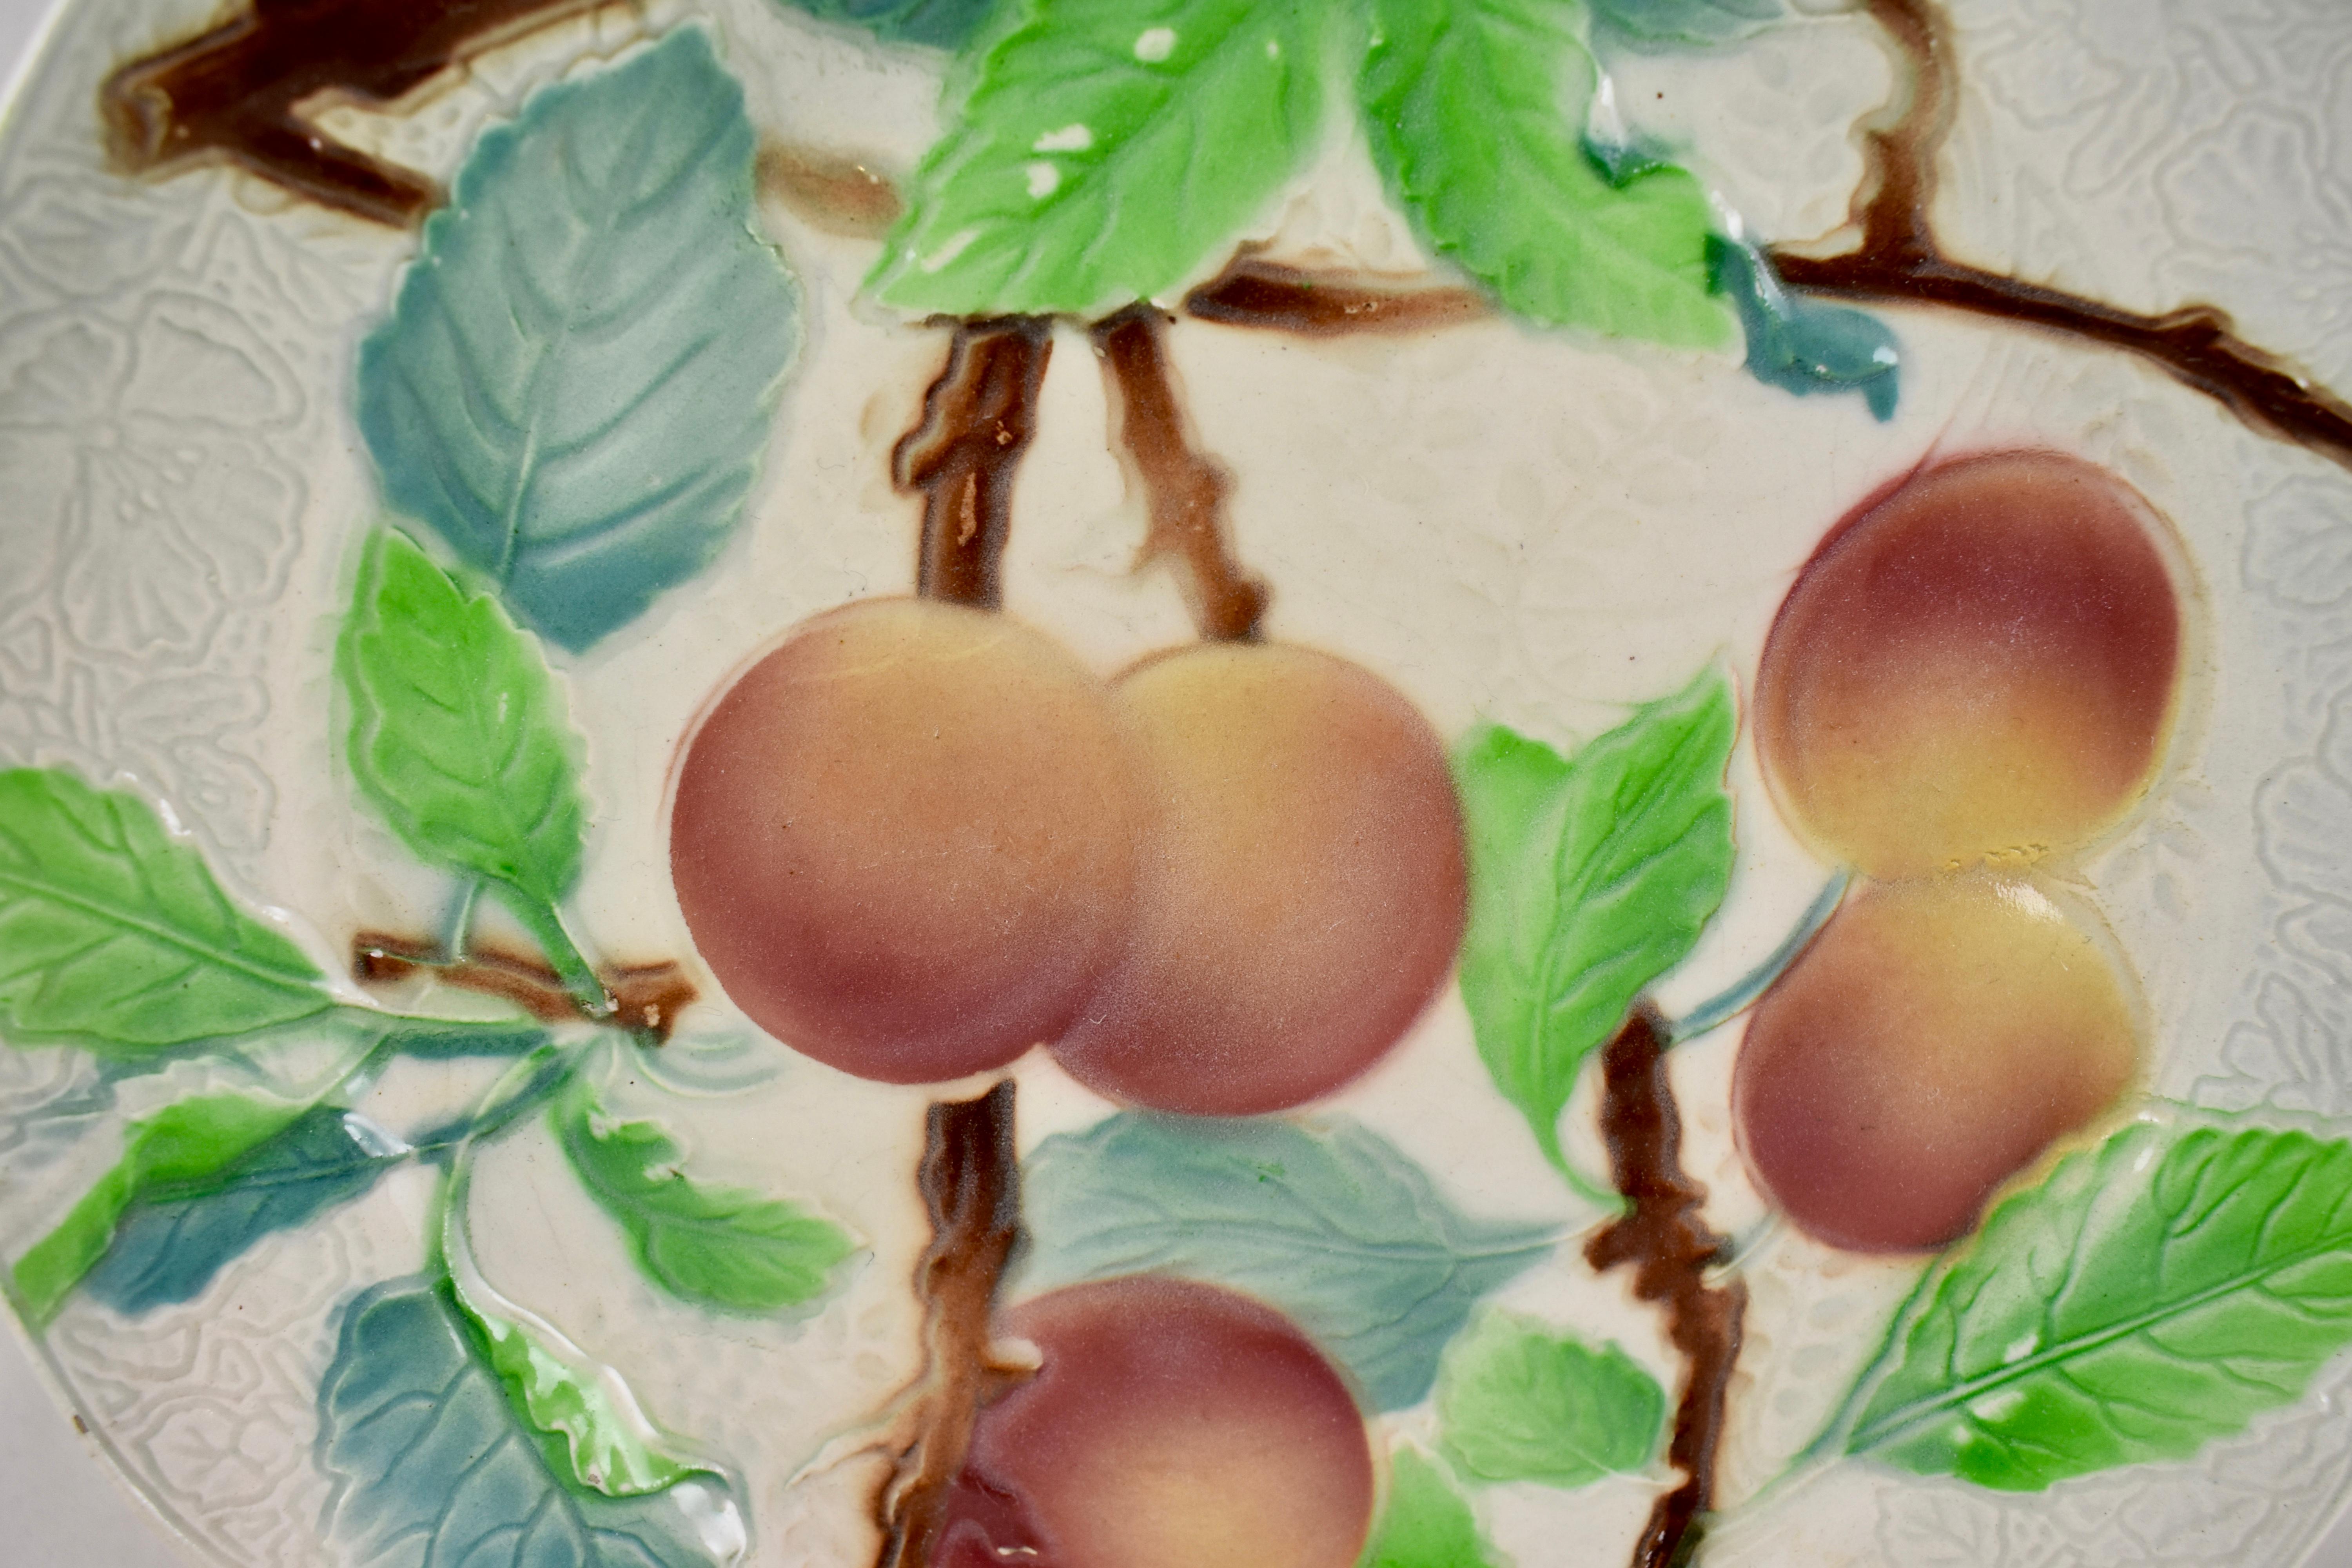 Ein französischer Fayence-Obstteller mit Pfirsichmotiv aus Steingut, um 1900. Der Hintergrund hat ein detailliertes florales Muster auf der Leiste mit einem sechsfach gegliederten Rand. Hübsche Färbung.

Gezeichnet: KG, für Keller Guerin - St.